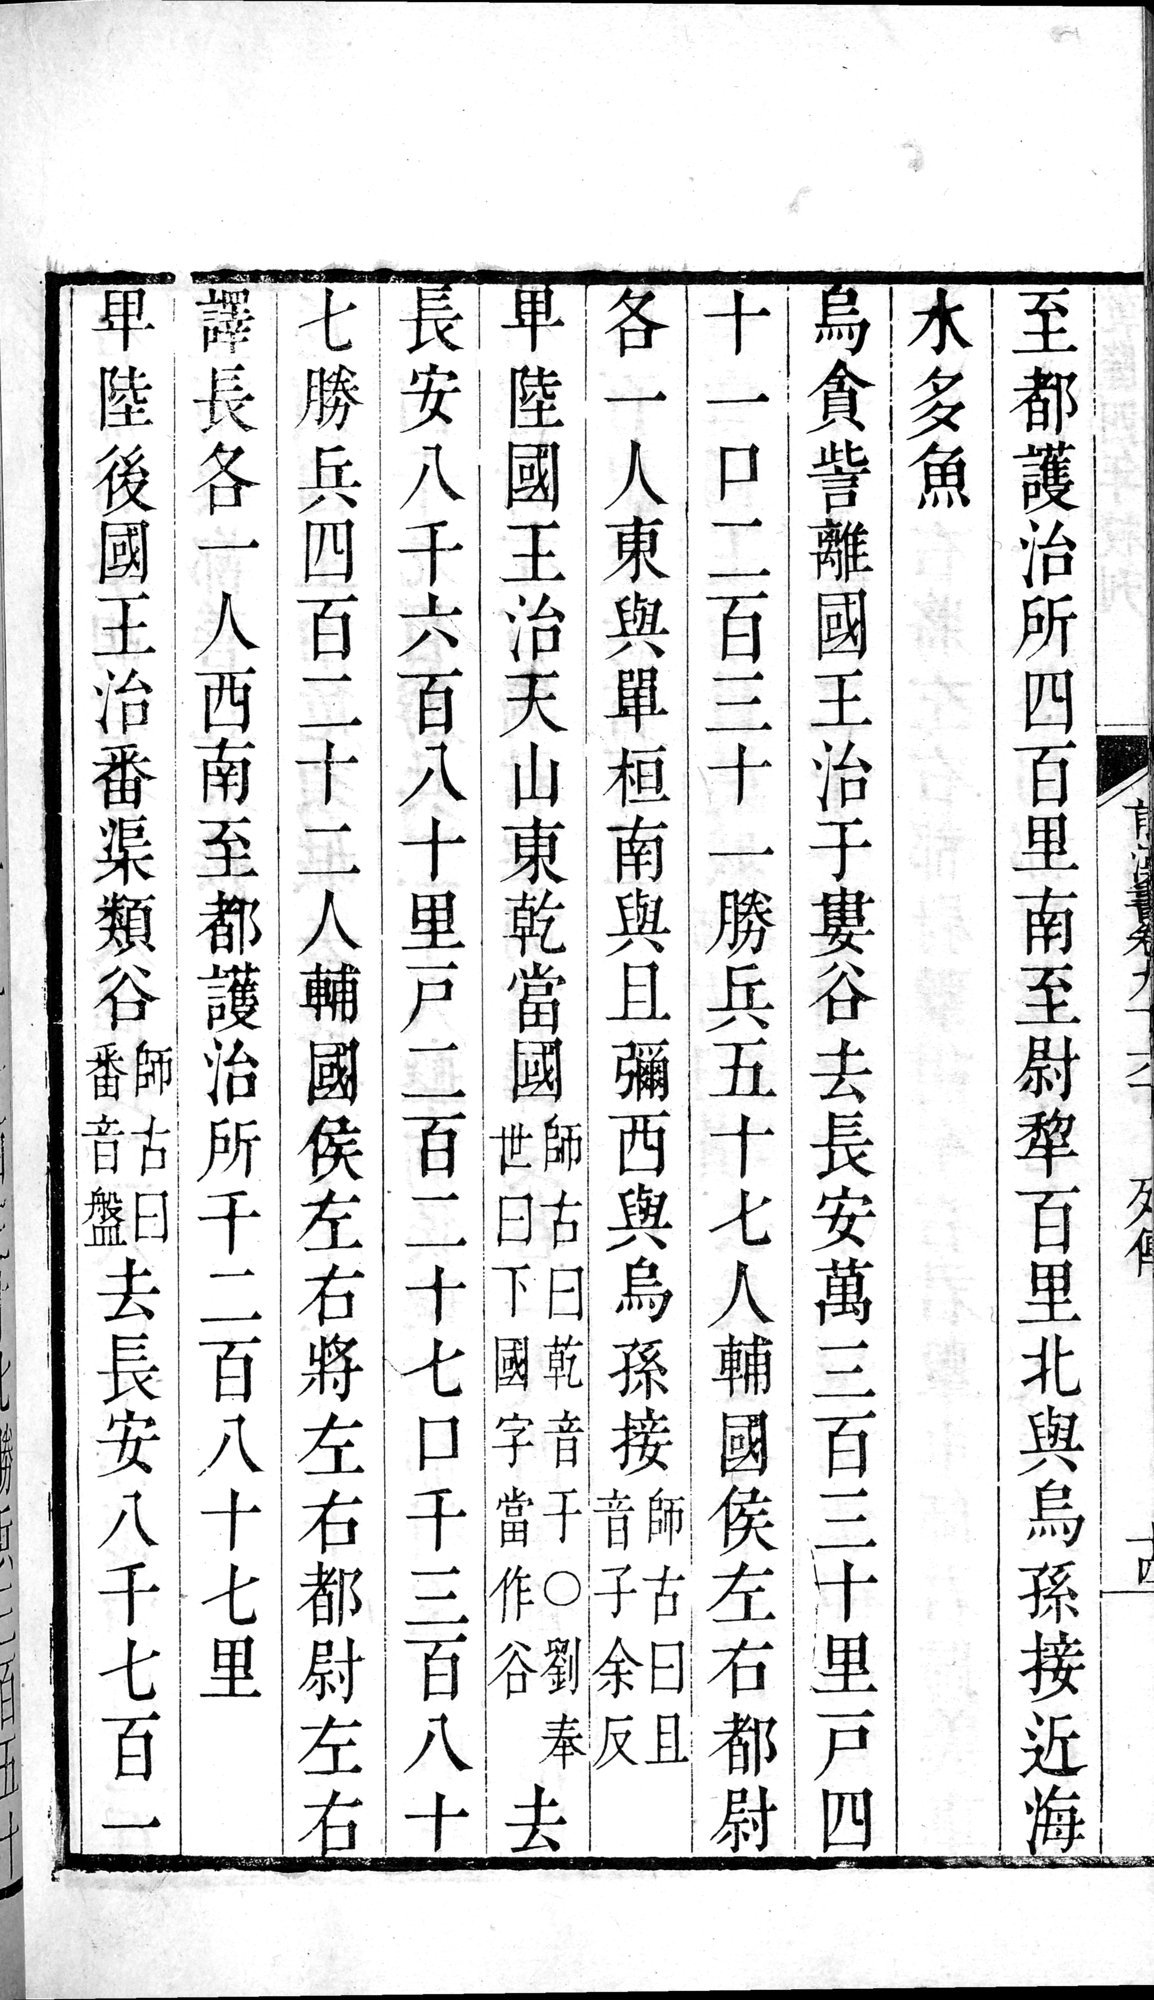 前漢書 巻96下 : vol.96 bottom / Page 28 (Grayscale High Resolution Image)